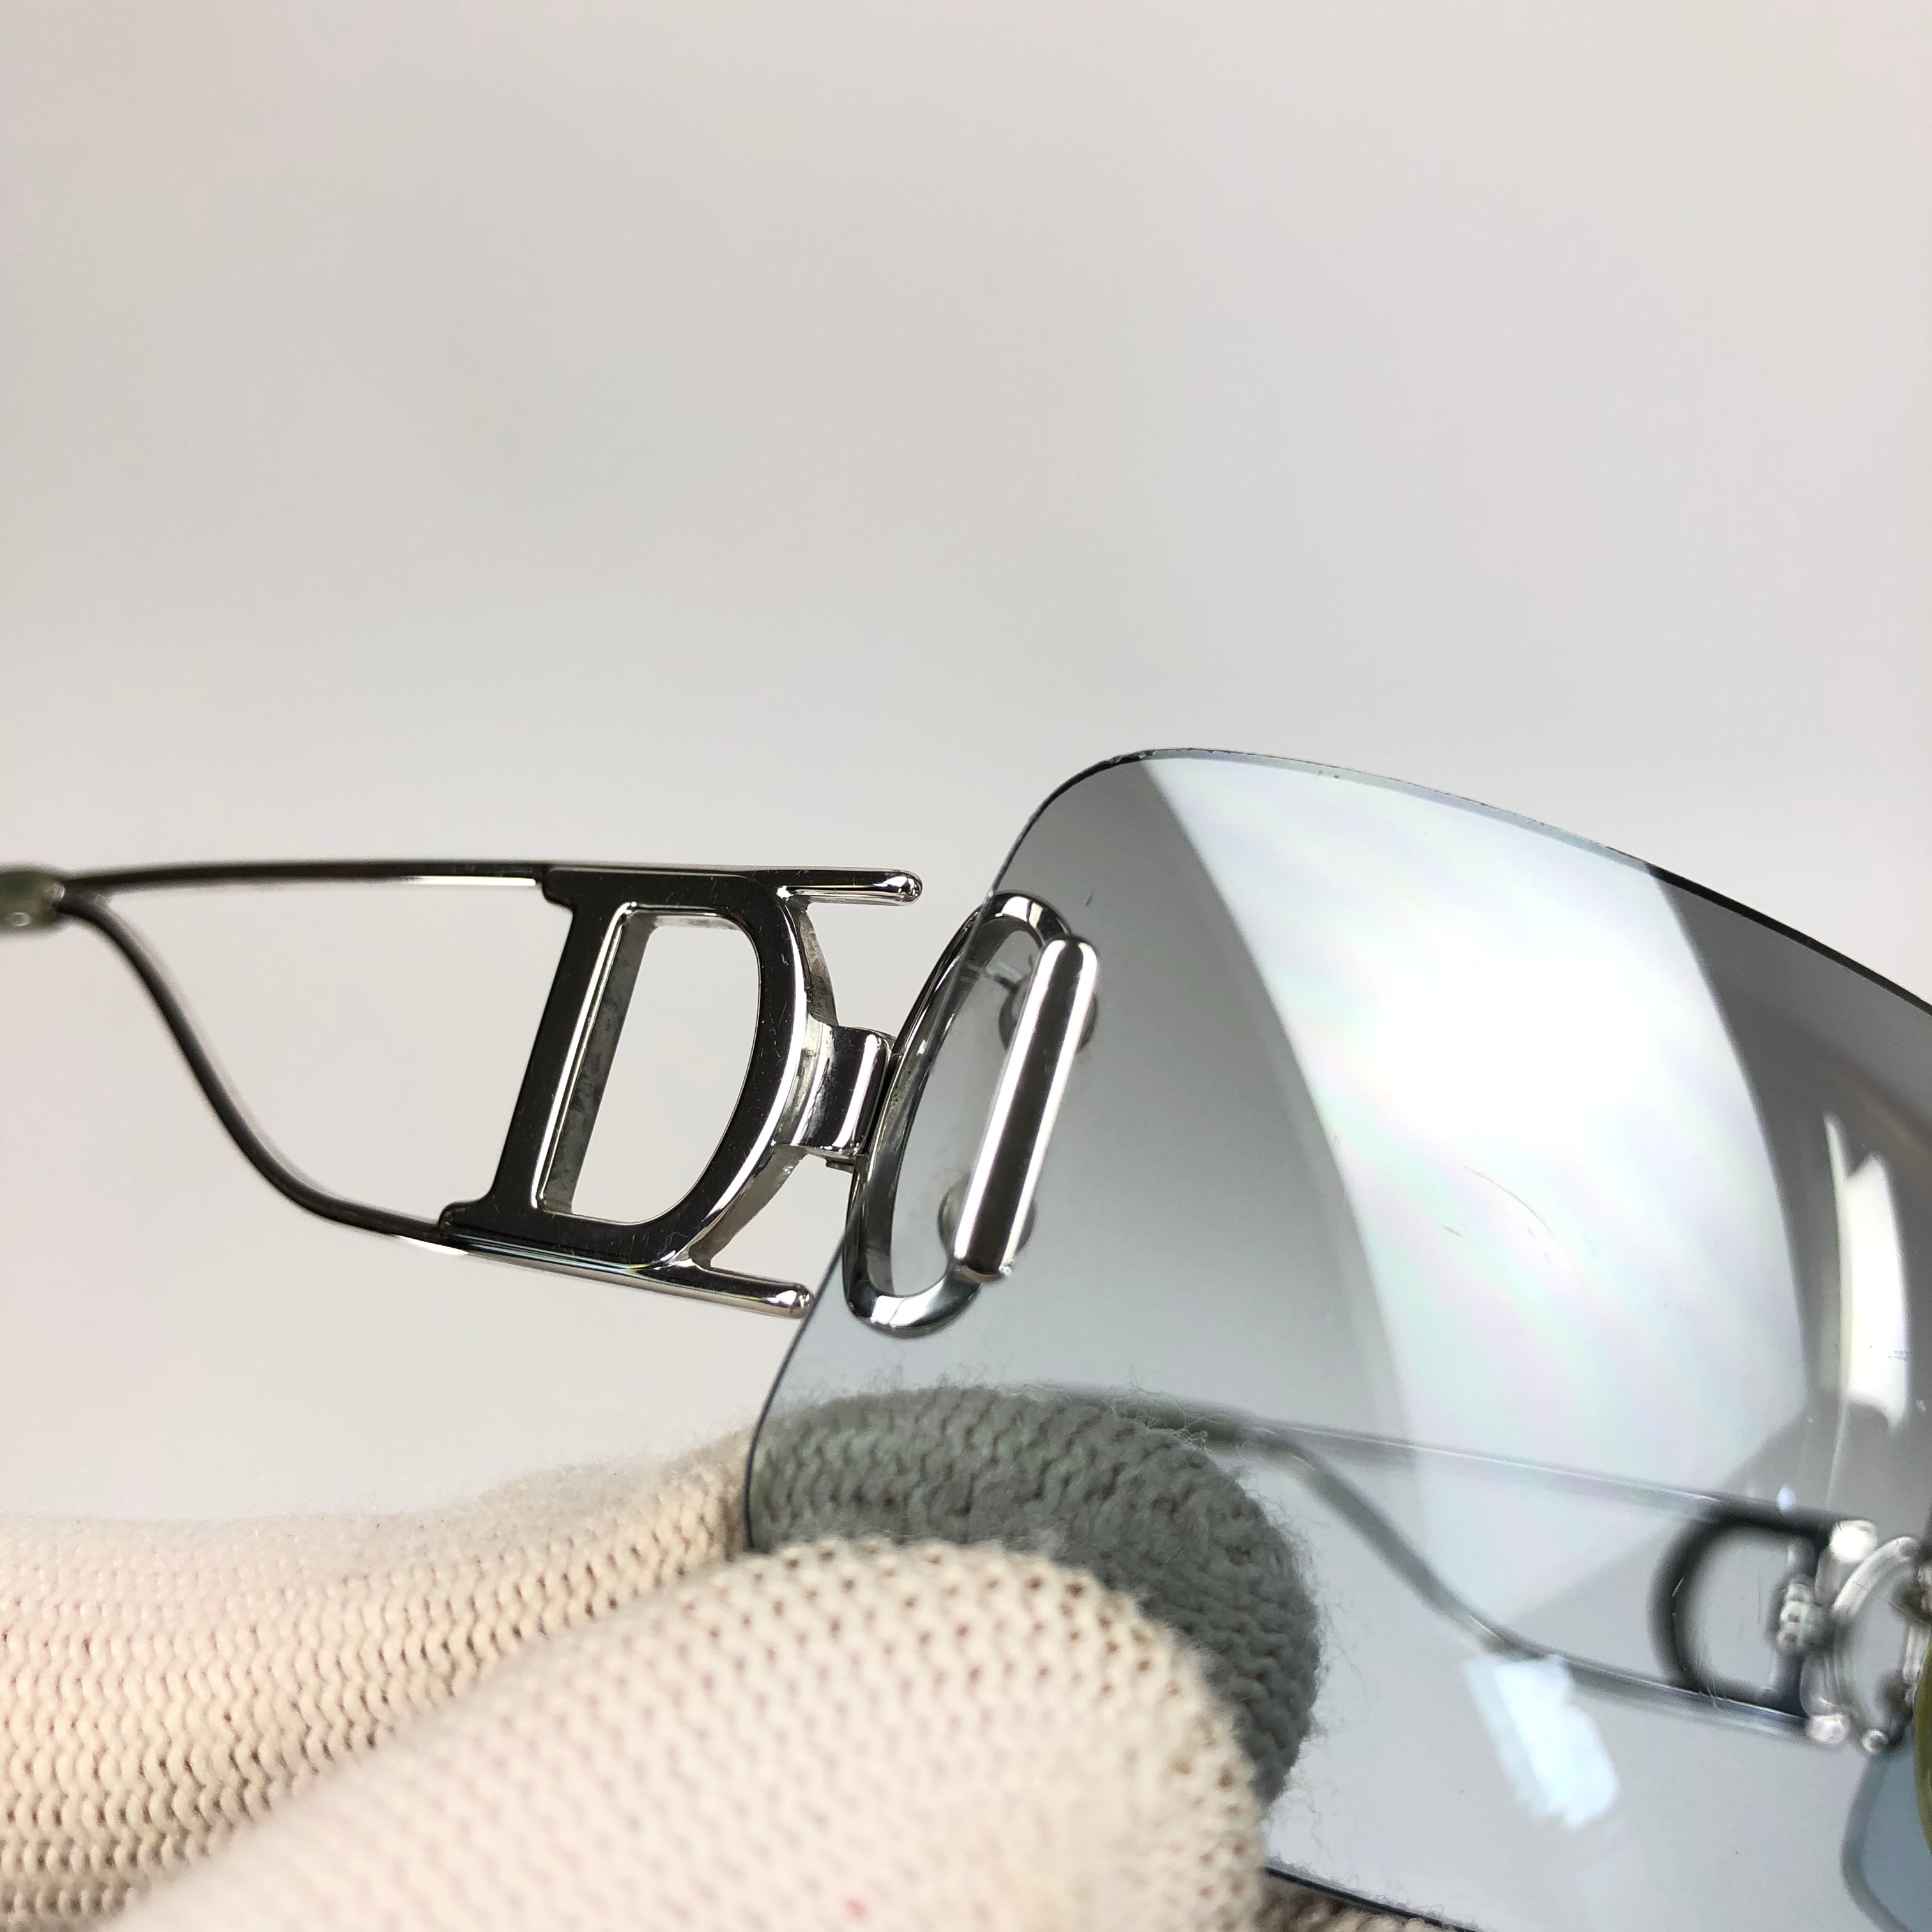 Christian Dior Rimless Sunglasses